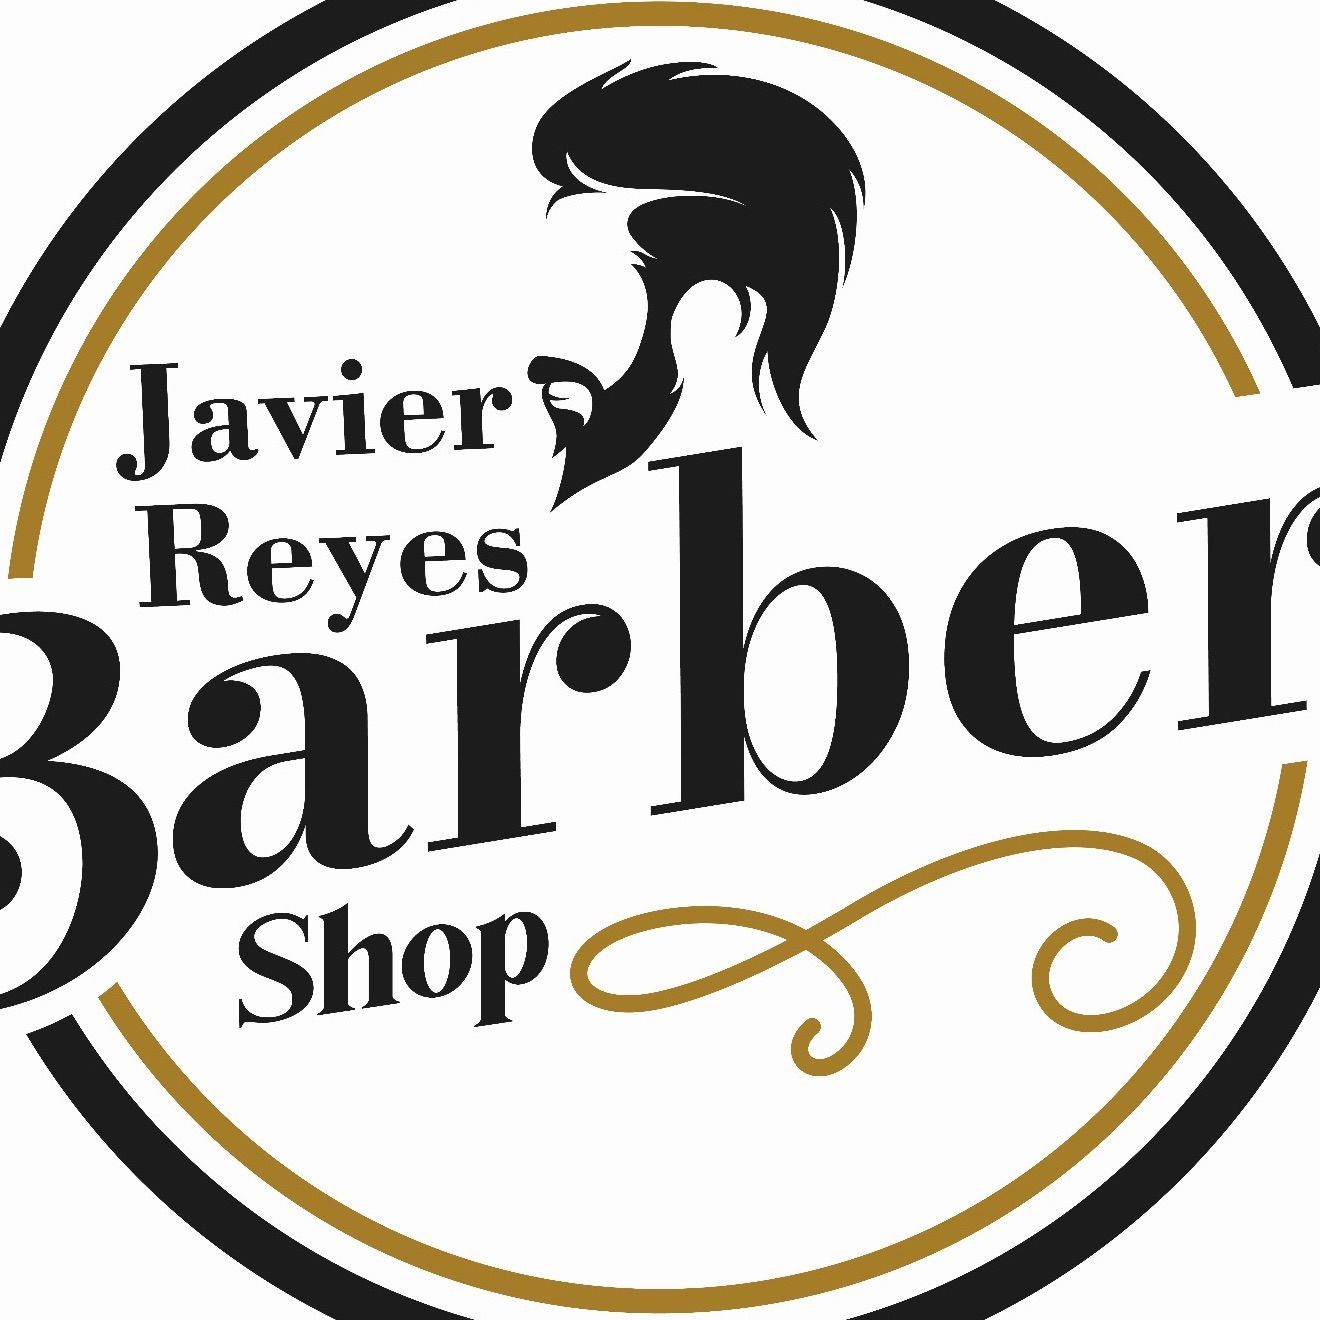 Javier Reyes Barber Shop, C/ El caño ñ16, Zalamea la real, 21640, Huelva